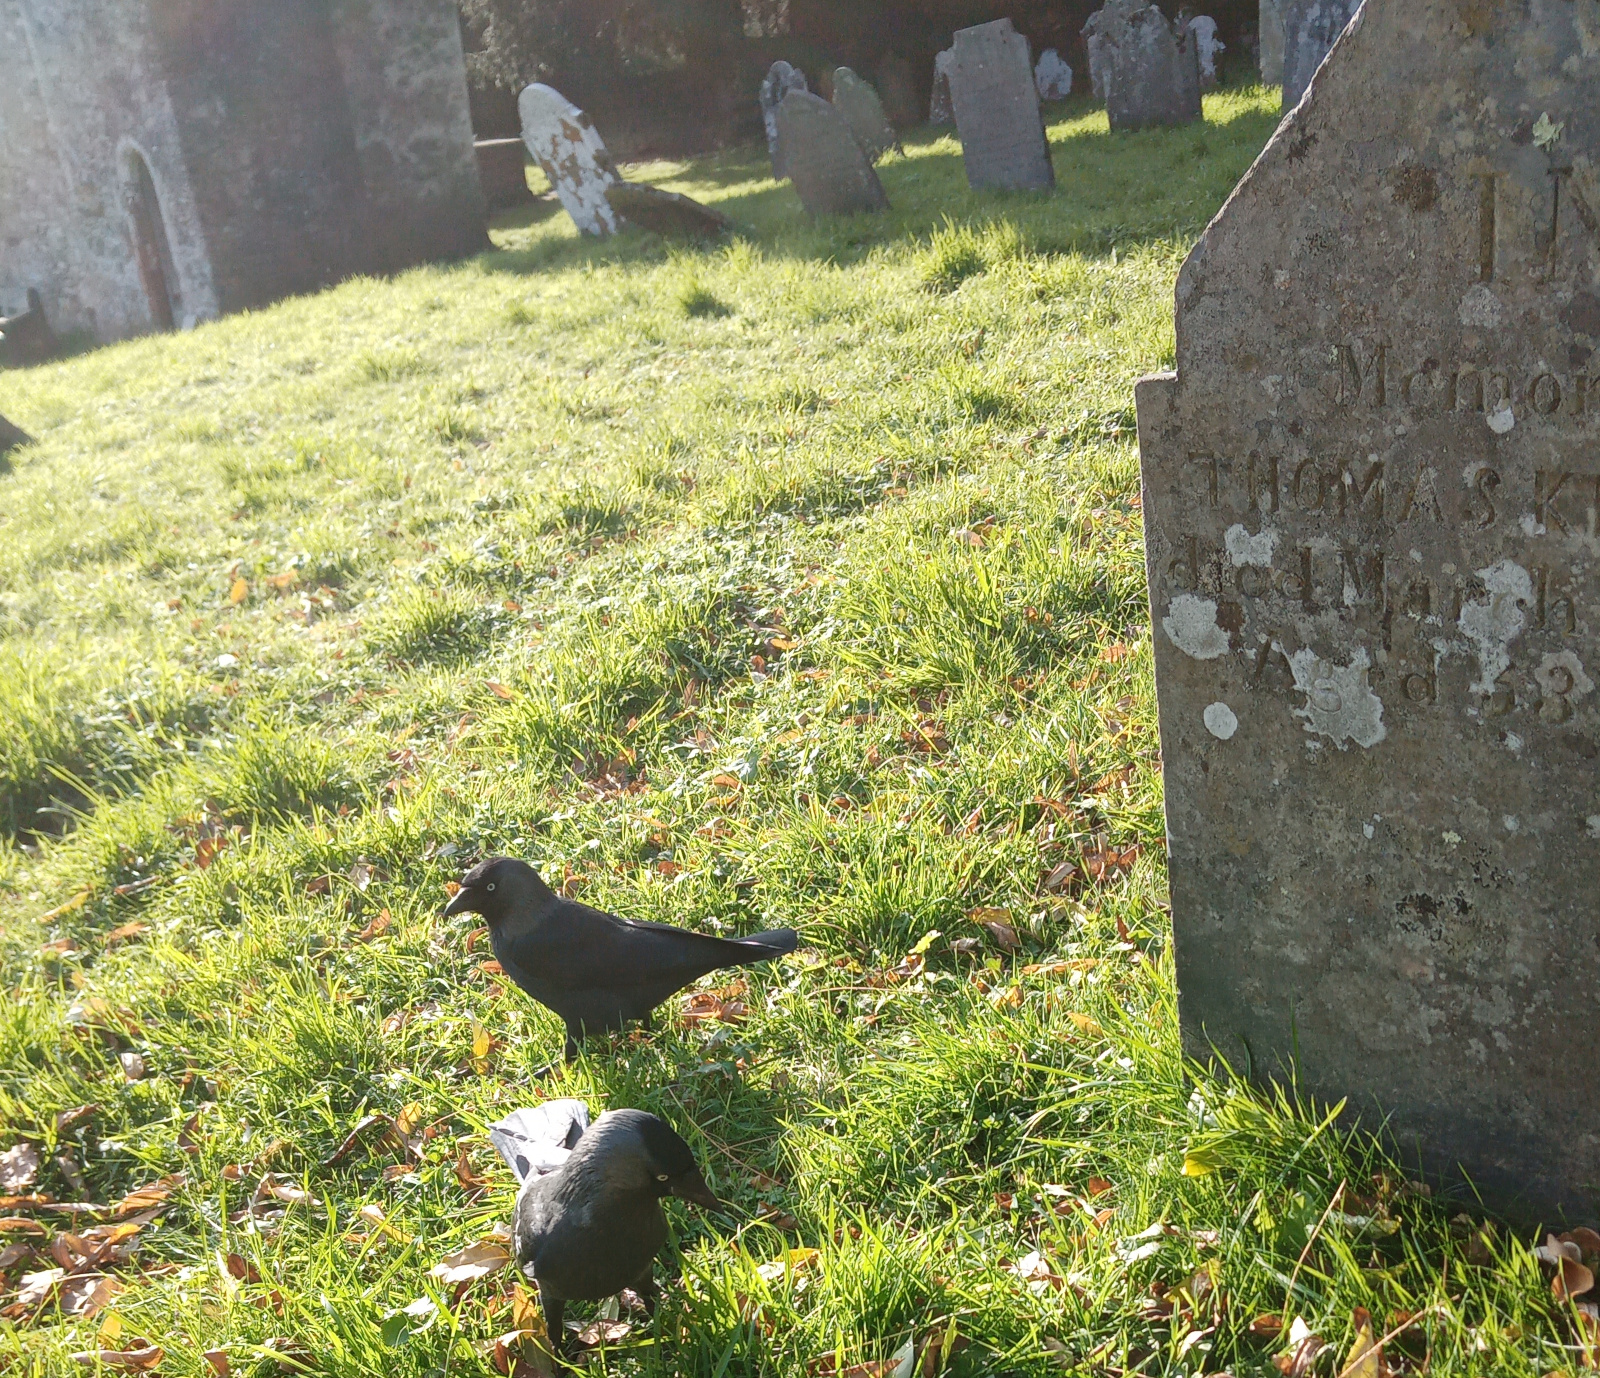 jackdaws amongst graves, Dartington